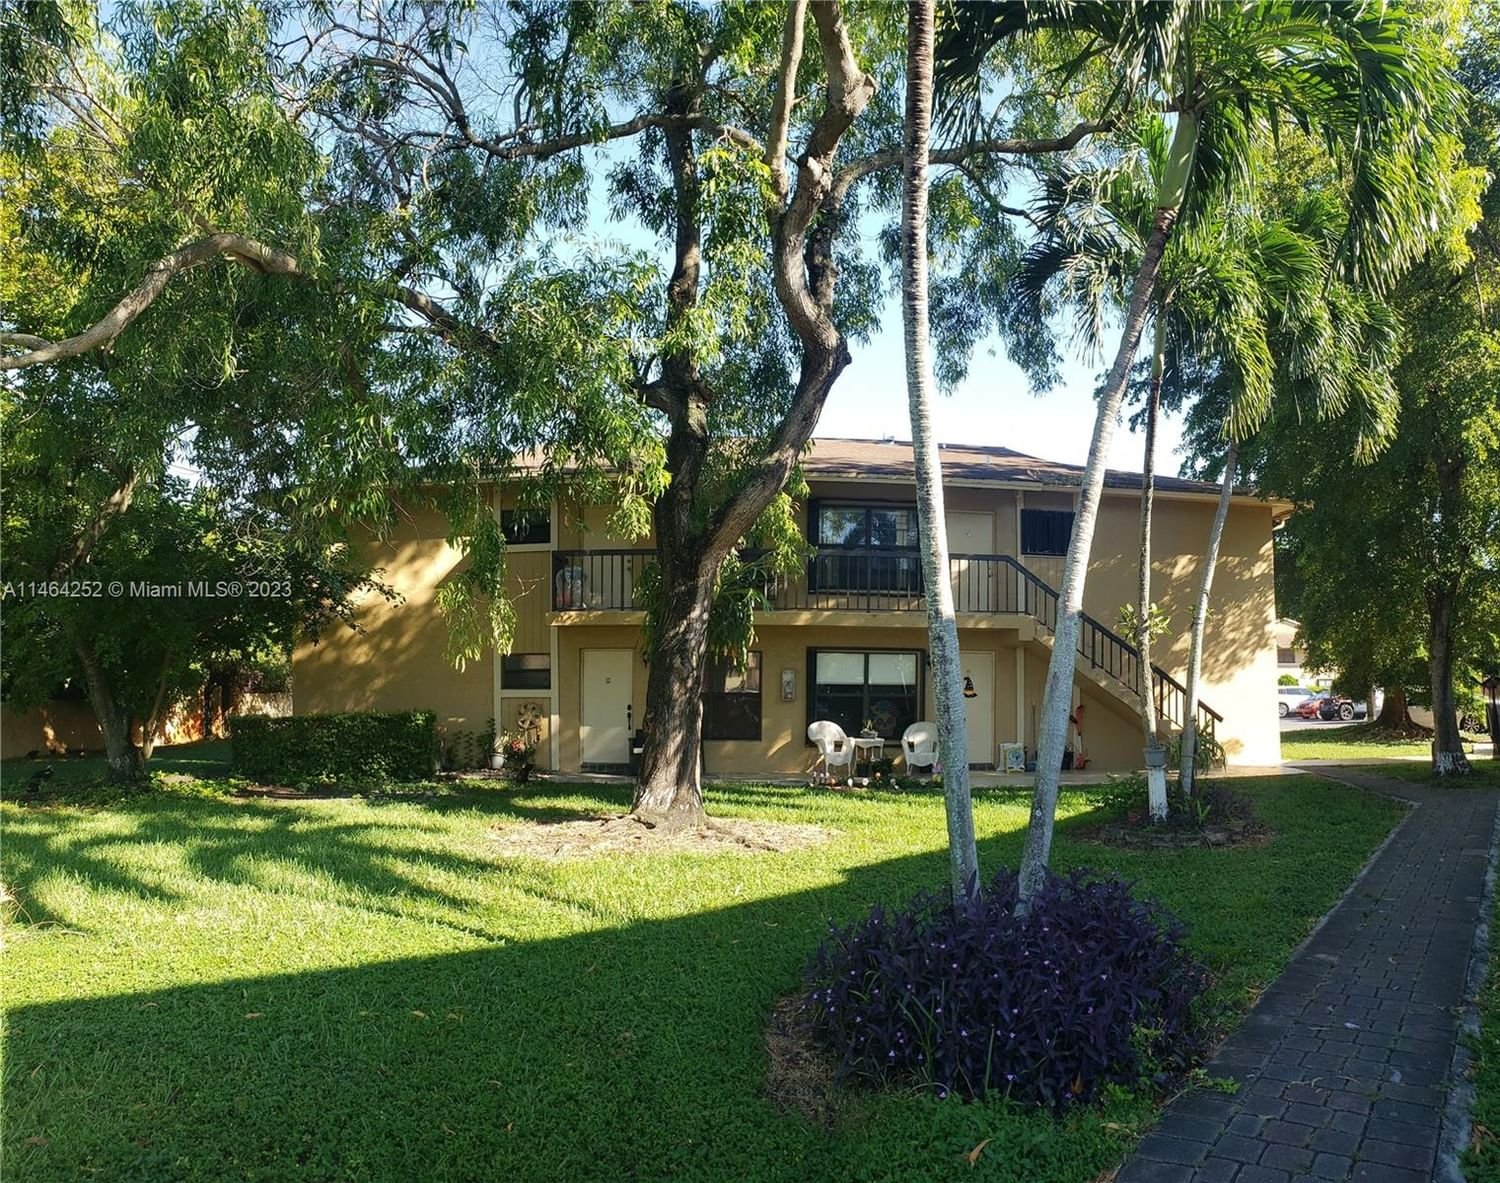 Real estate property located at 6690 26th Ct #22-16, Miami-Dade County, LAGO GRANDE ONE CONDO, Hialeah, FL